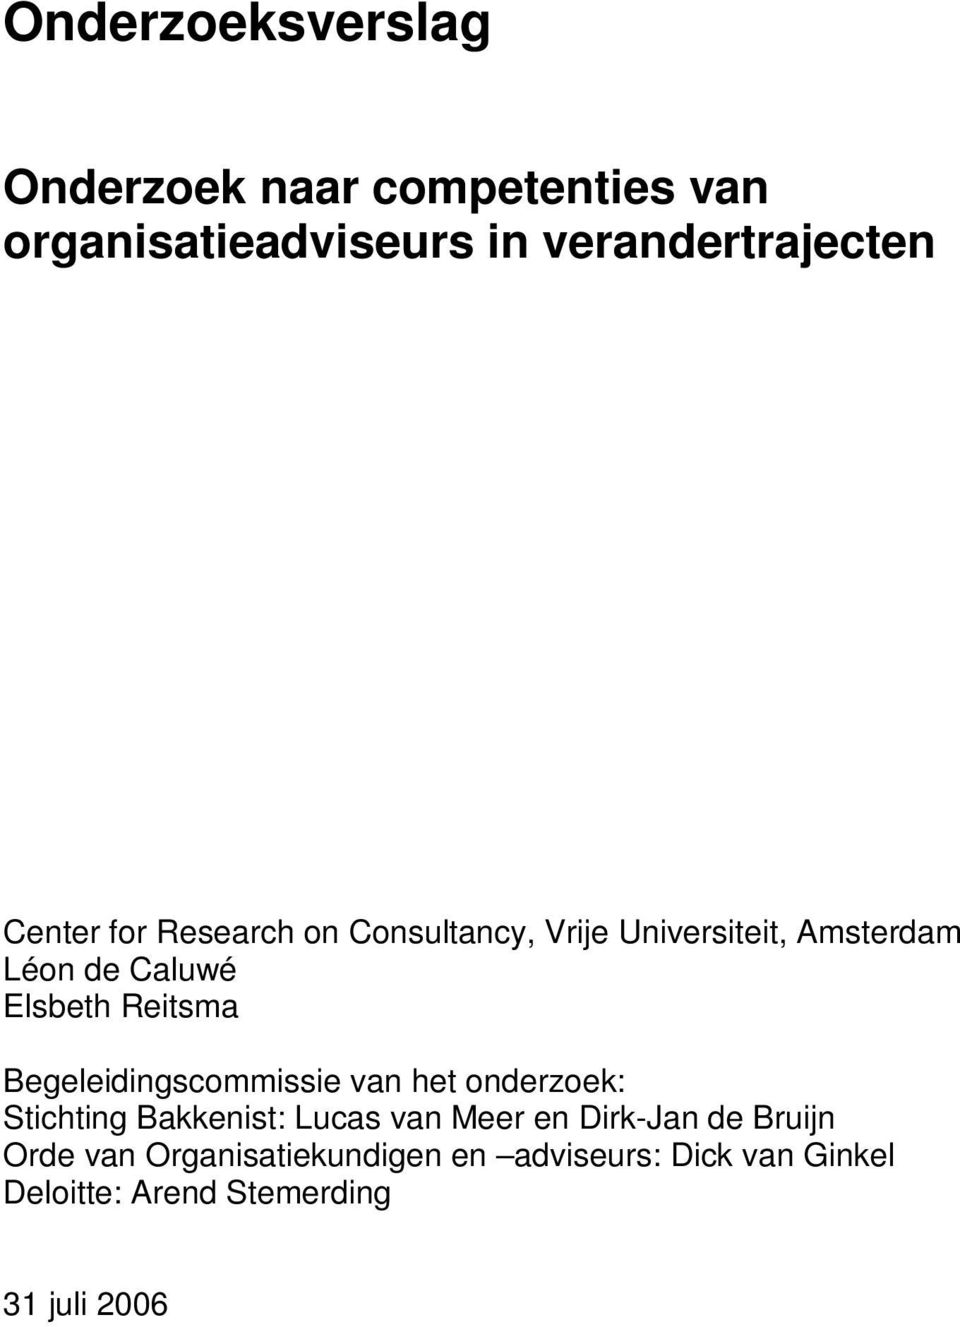 Begeleidingscommissie van het onderzoek: Stichting Bakkenist: Lucas van Meer en Dirk-Jan de